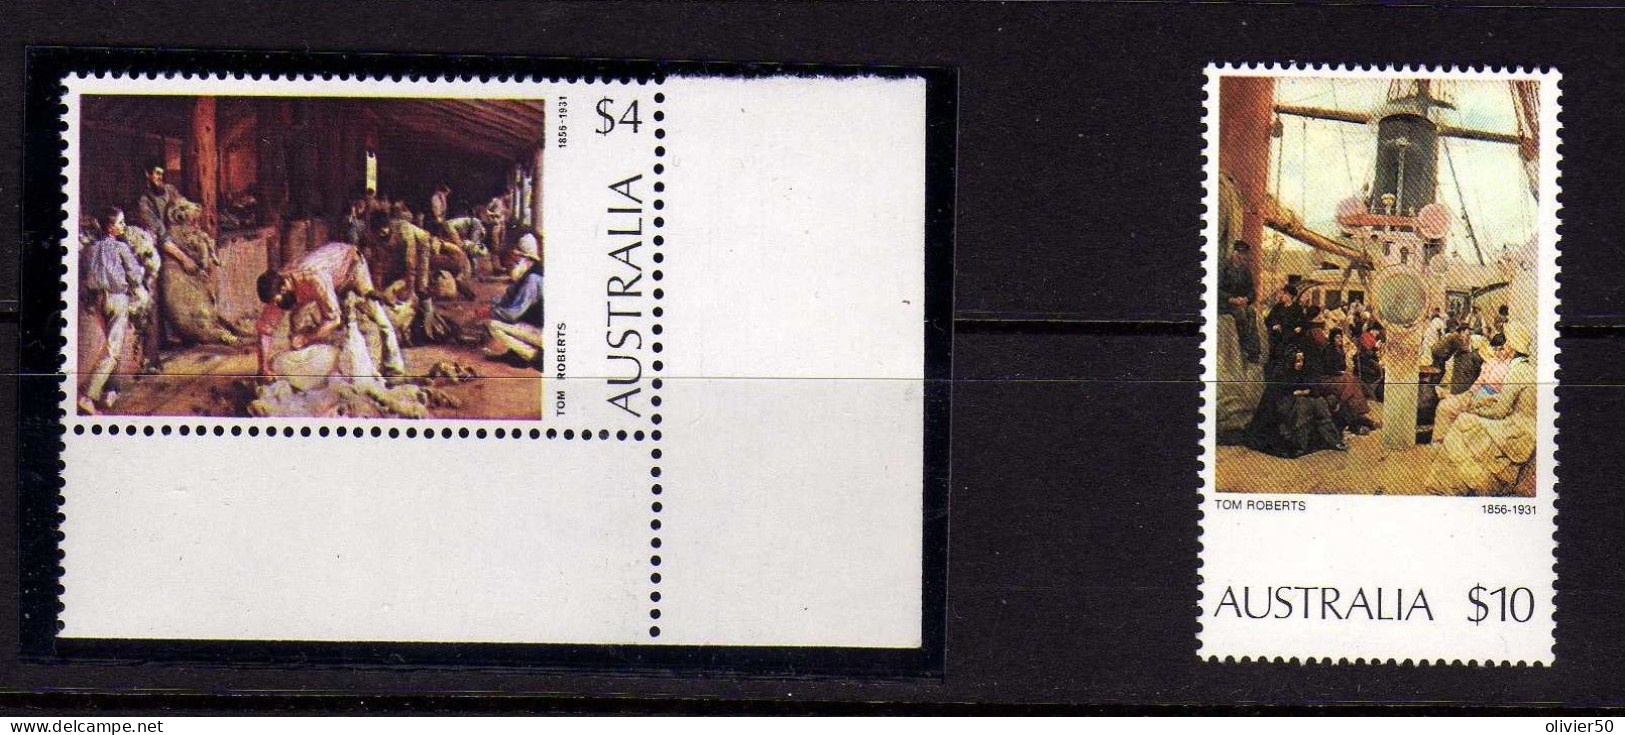 Australie - Tableaux - Neufs** - MNH - Mint Stamps